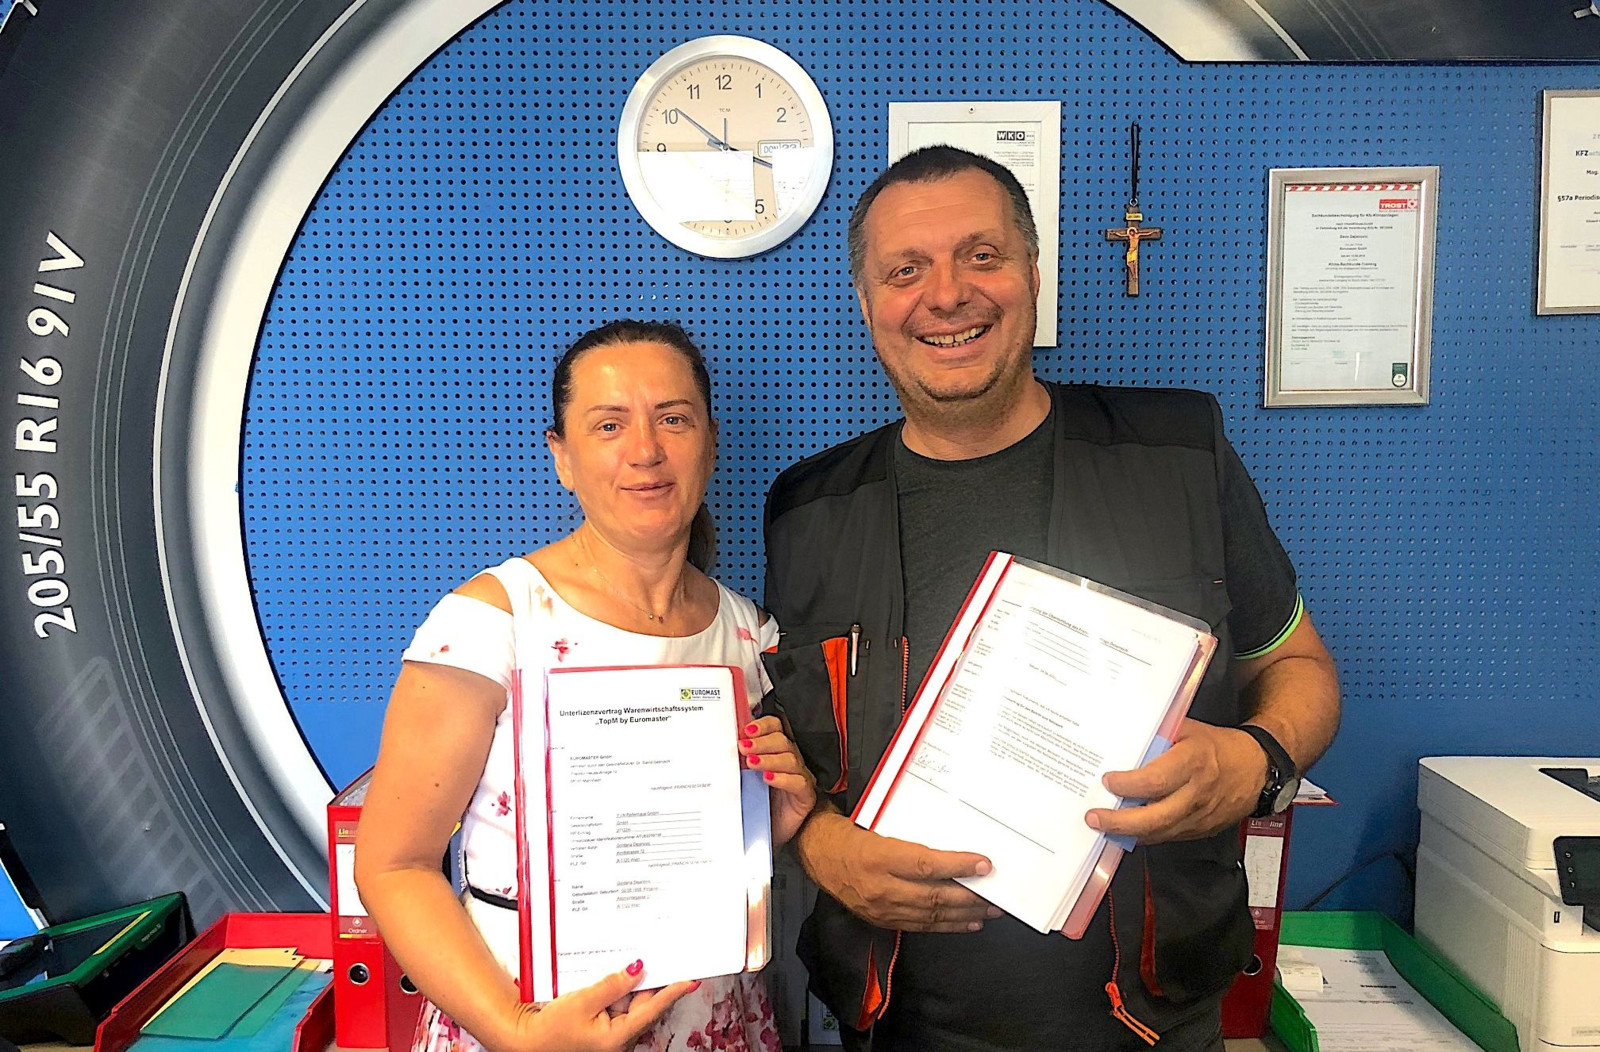 Gordana Dejanovic (Geschäftsführerin) und Sascha Dejanovic von T.I.N. Reifenhaus in Wien haben ihren Franchise-Vertrag verlängert. 